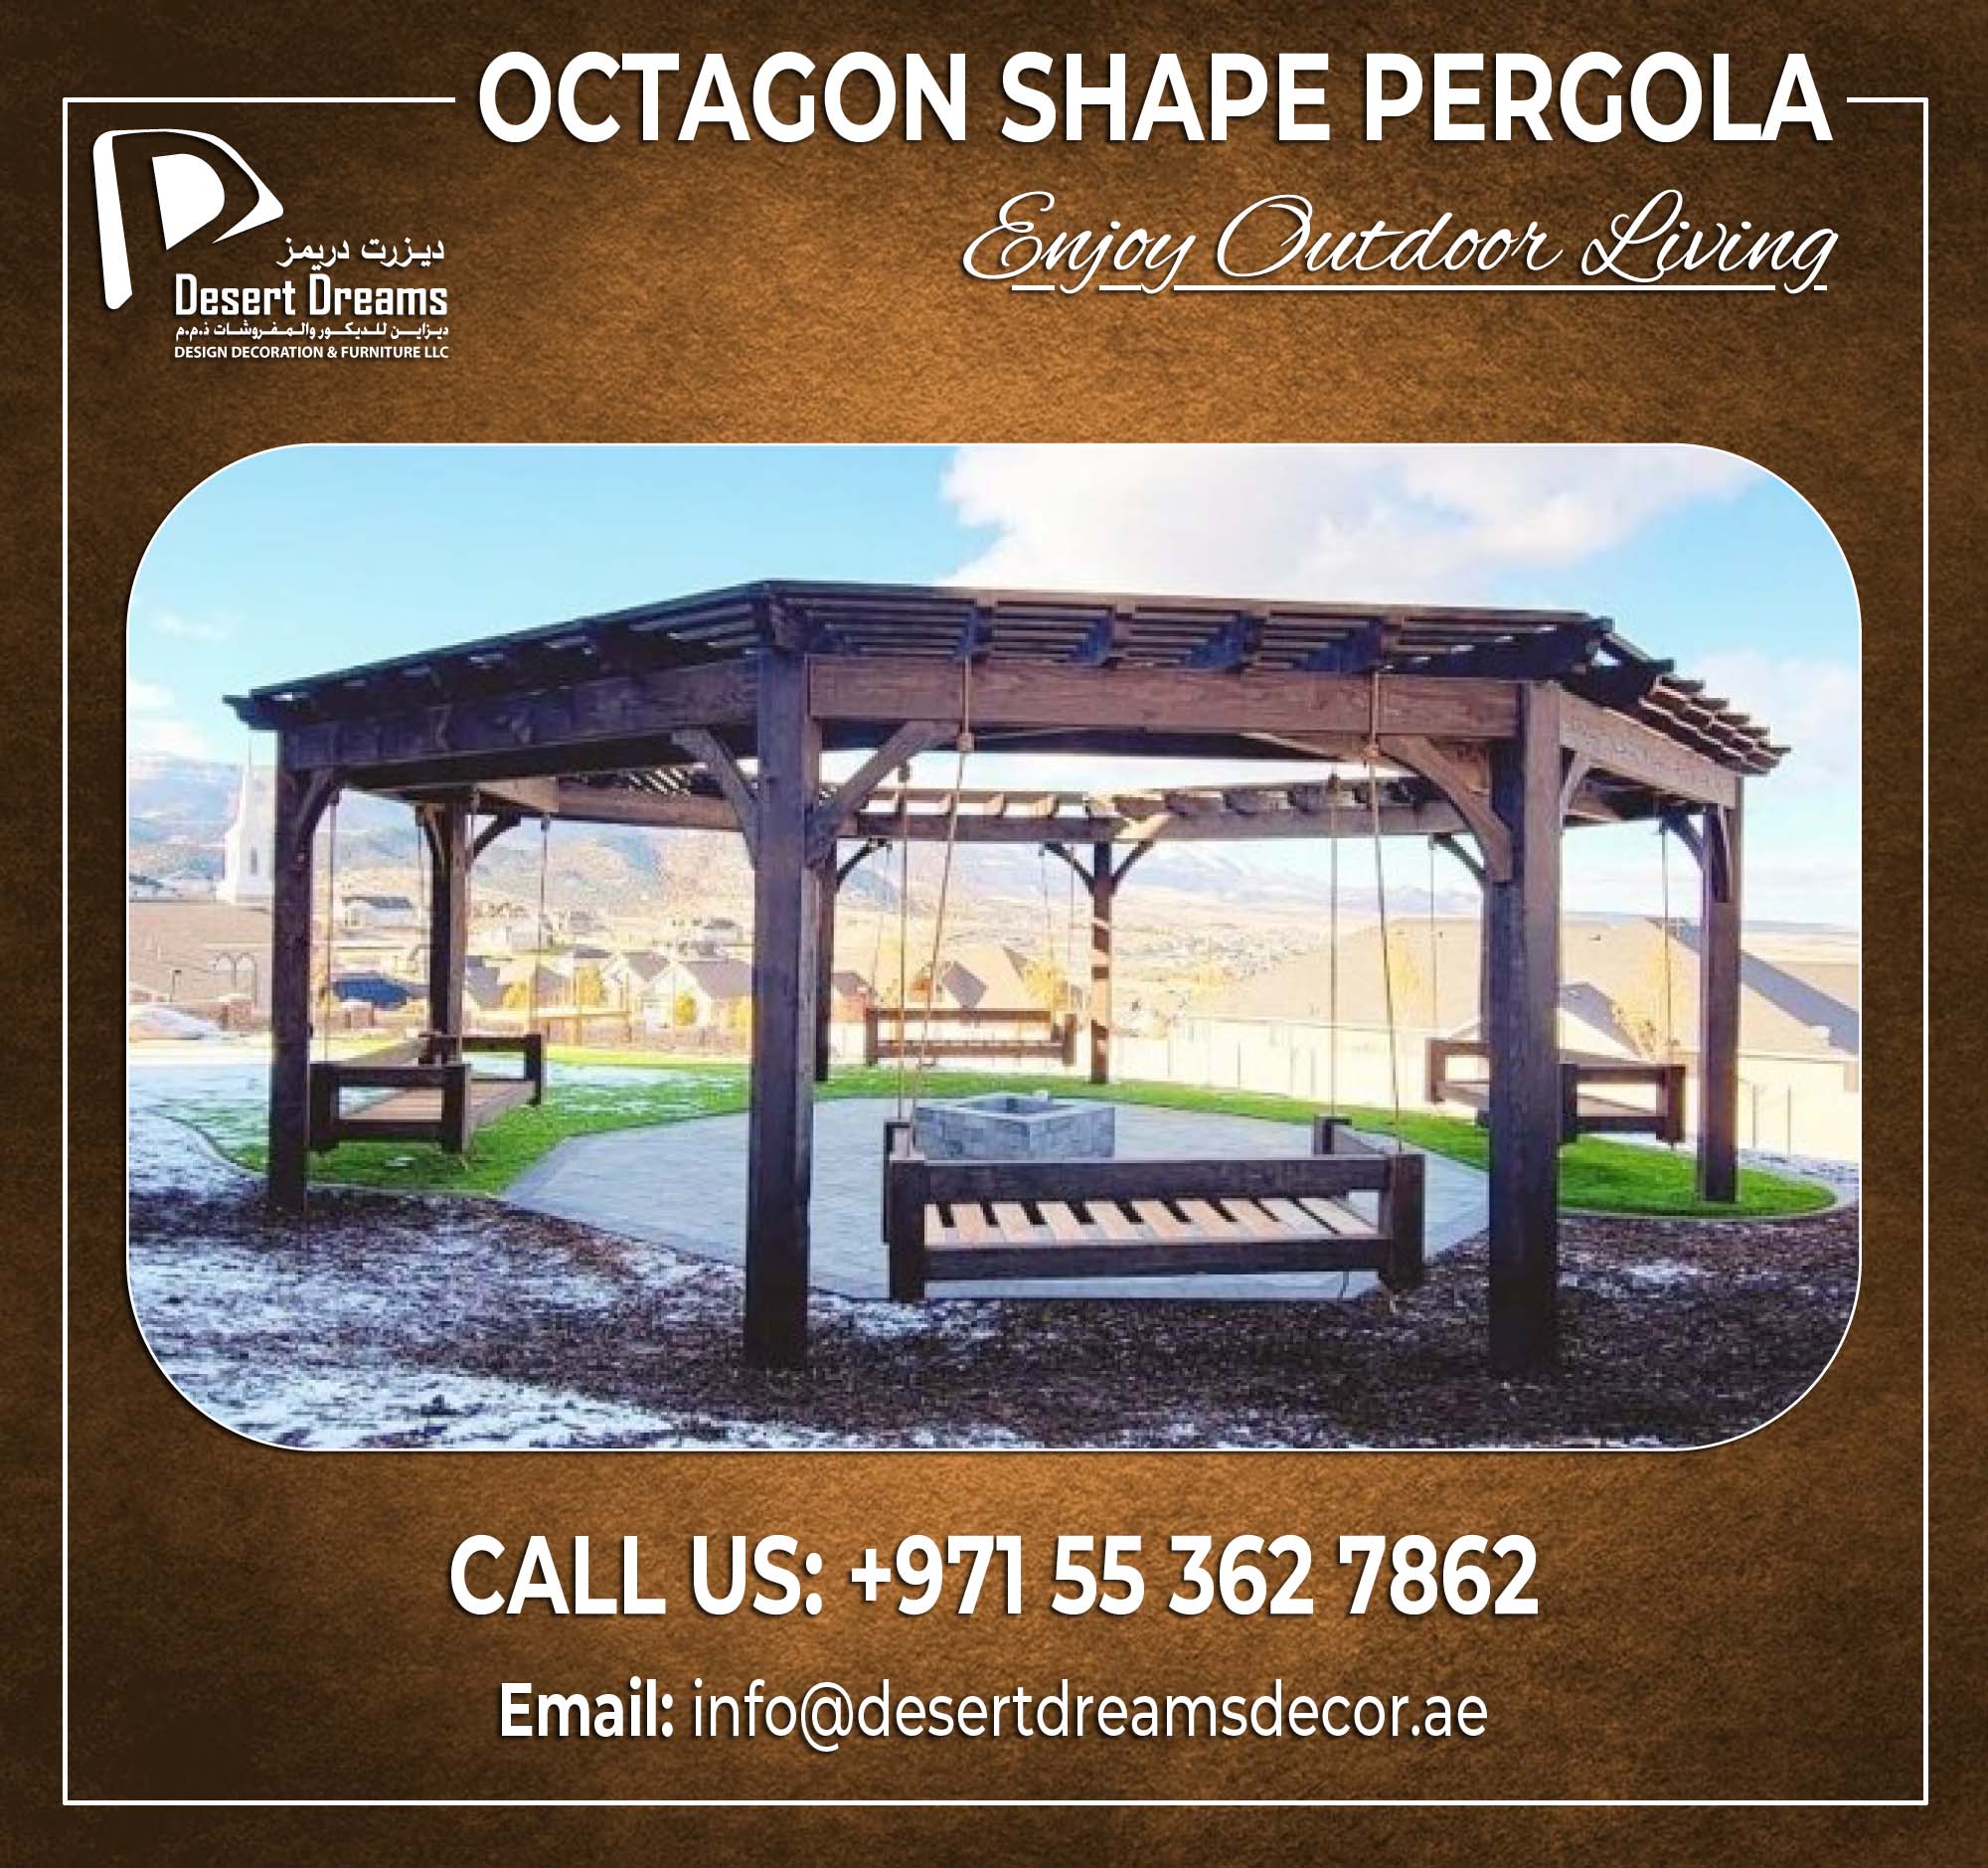 Octagon Shape Pergola in UAE.jpg